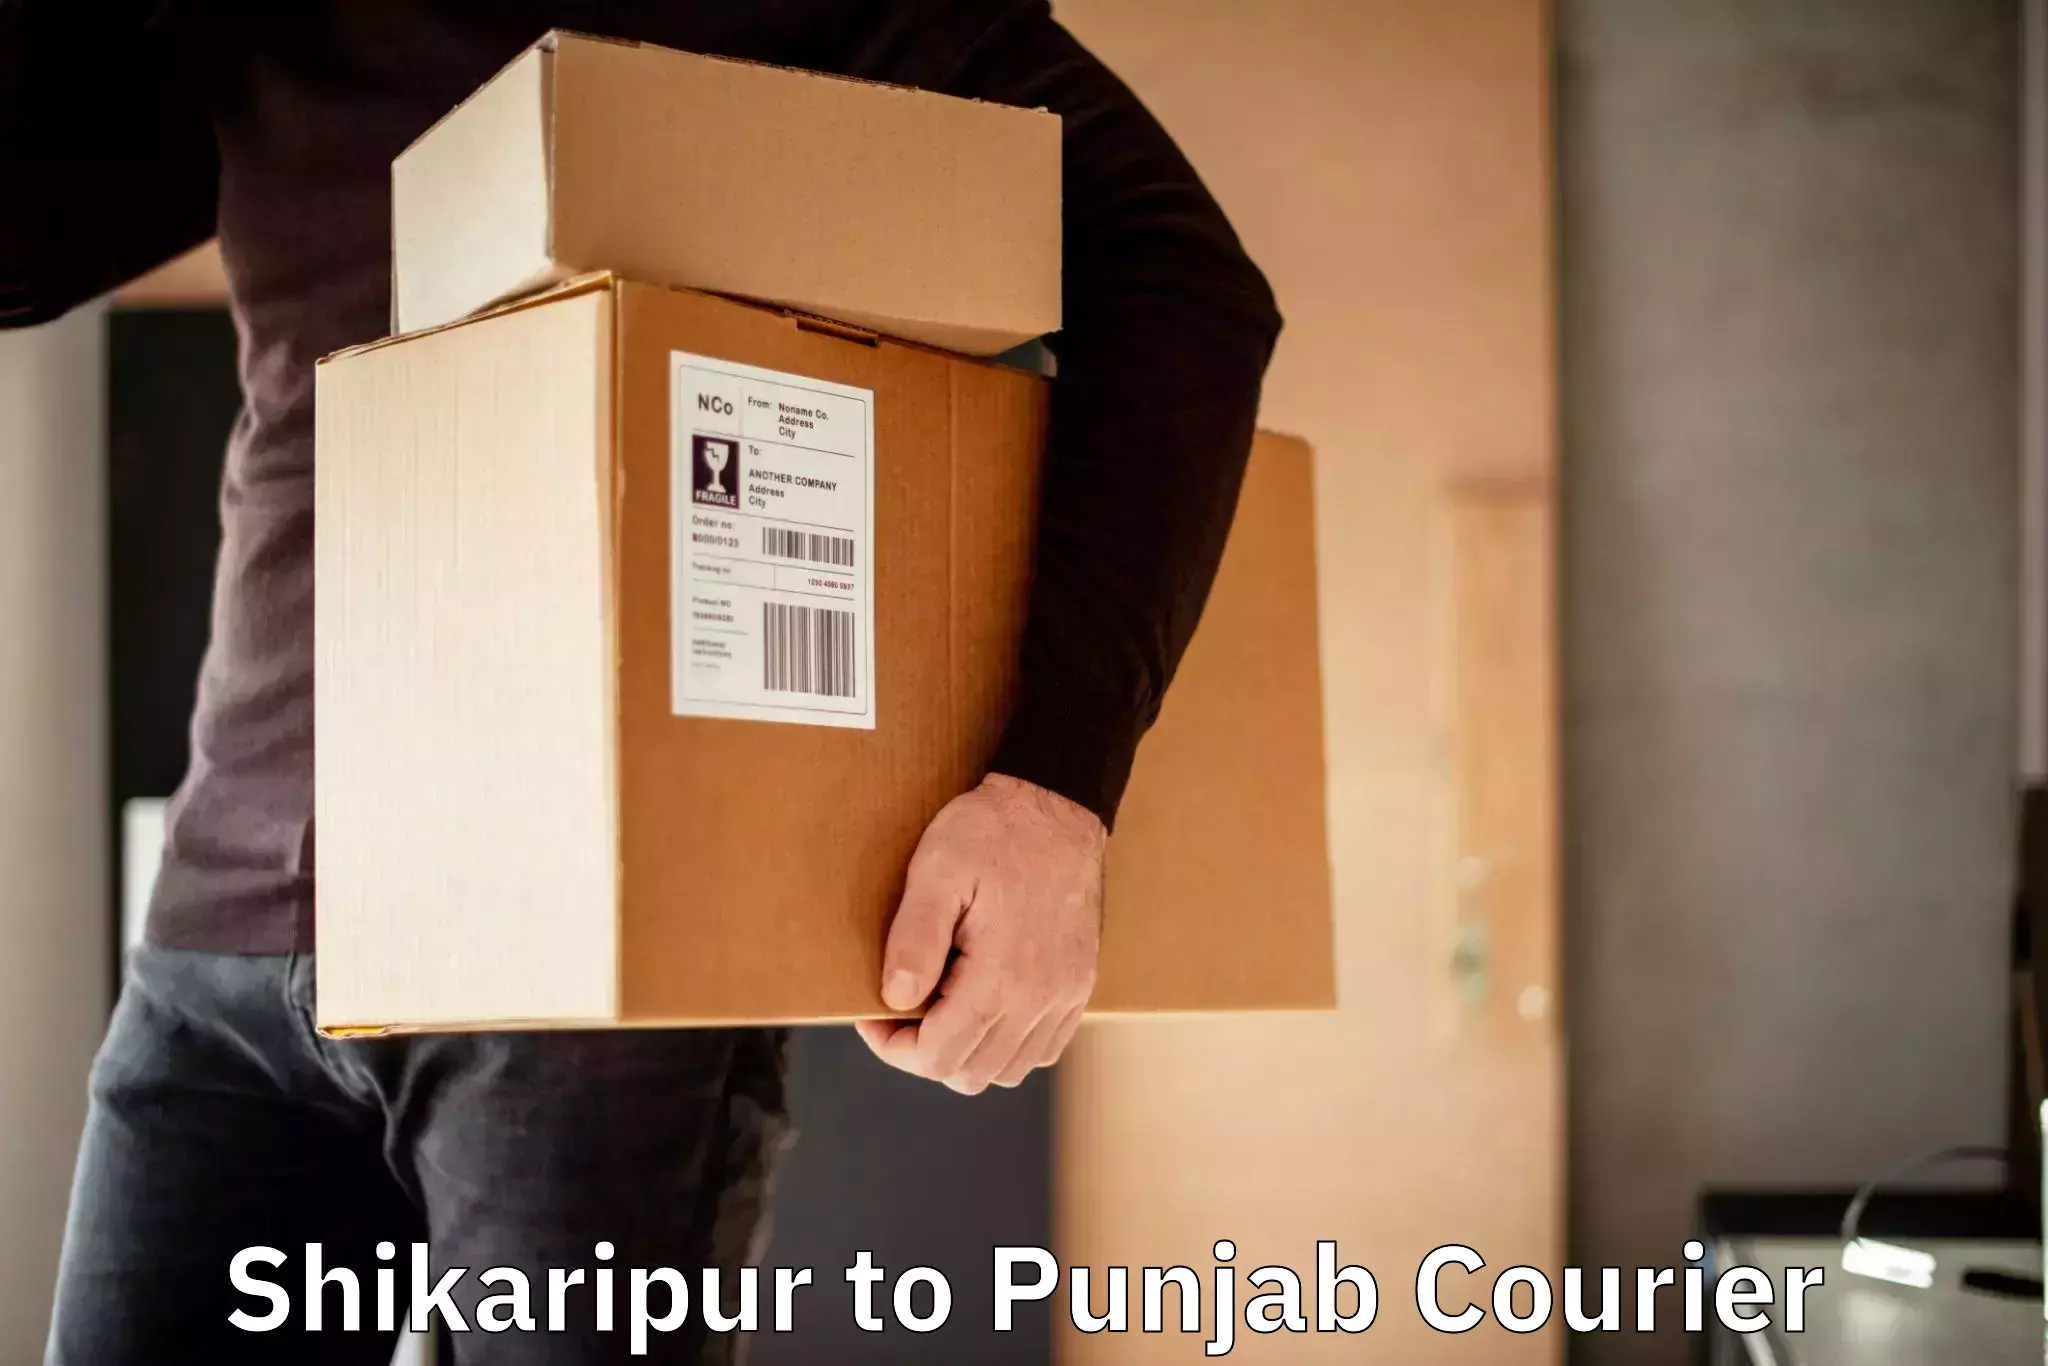 Versatile courier offerings Shikaripur to Punjab